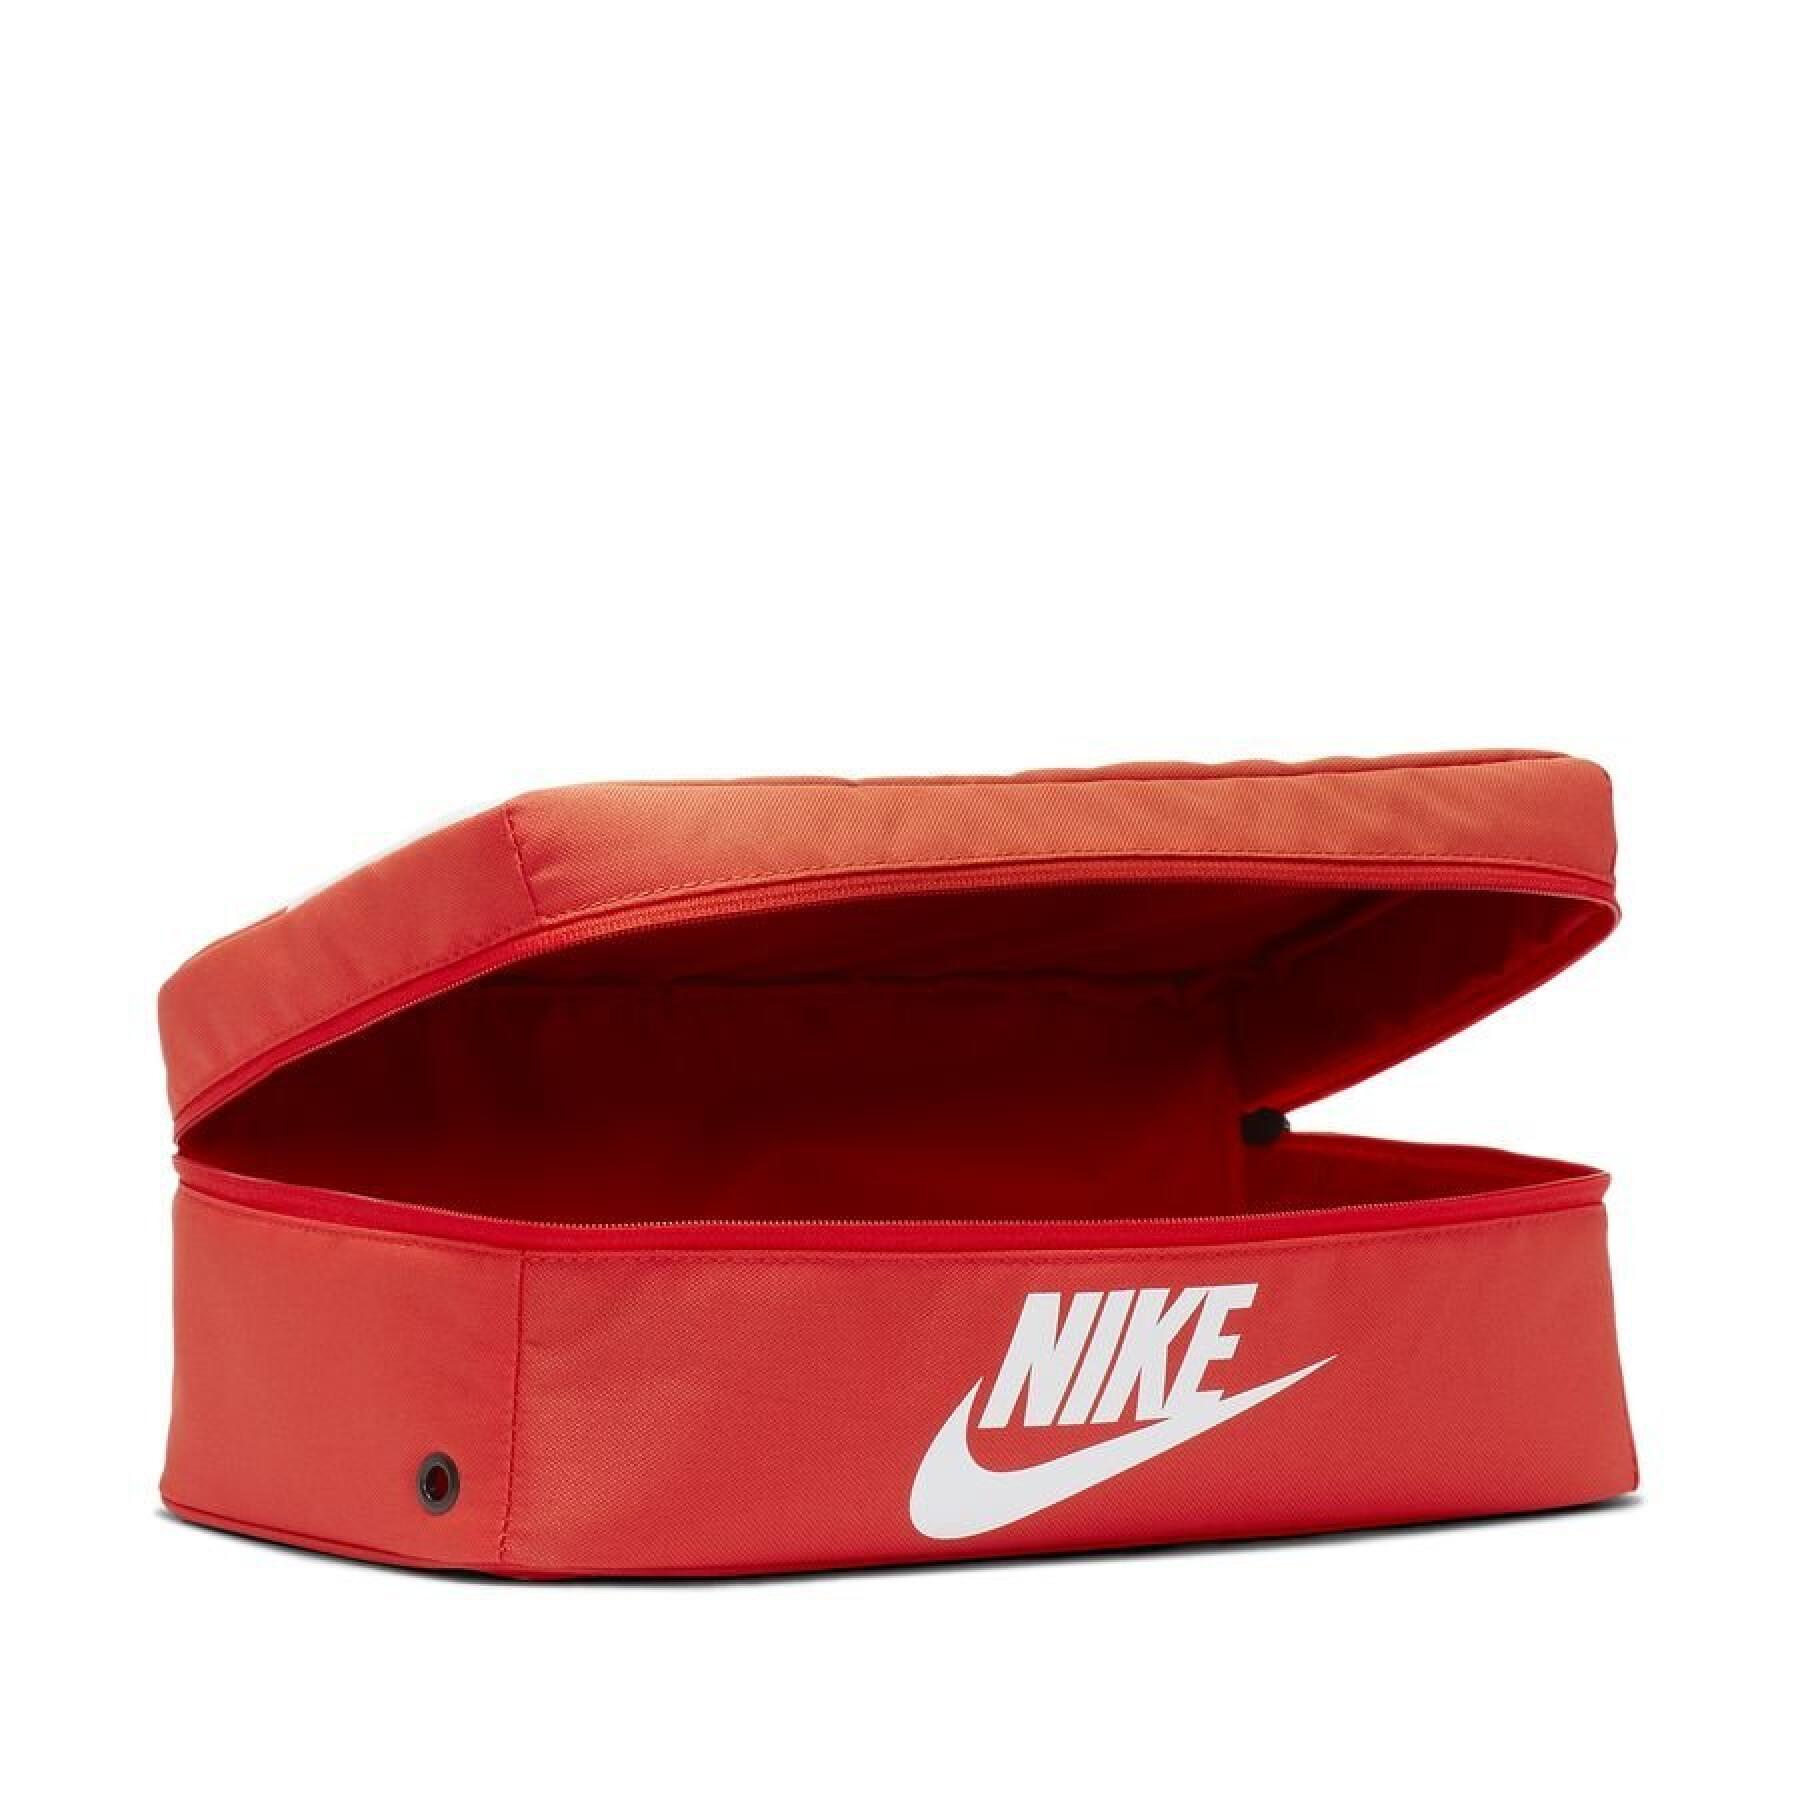 Zip shoe bag Nike